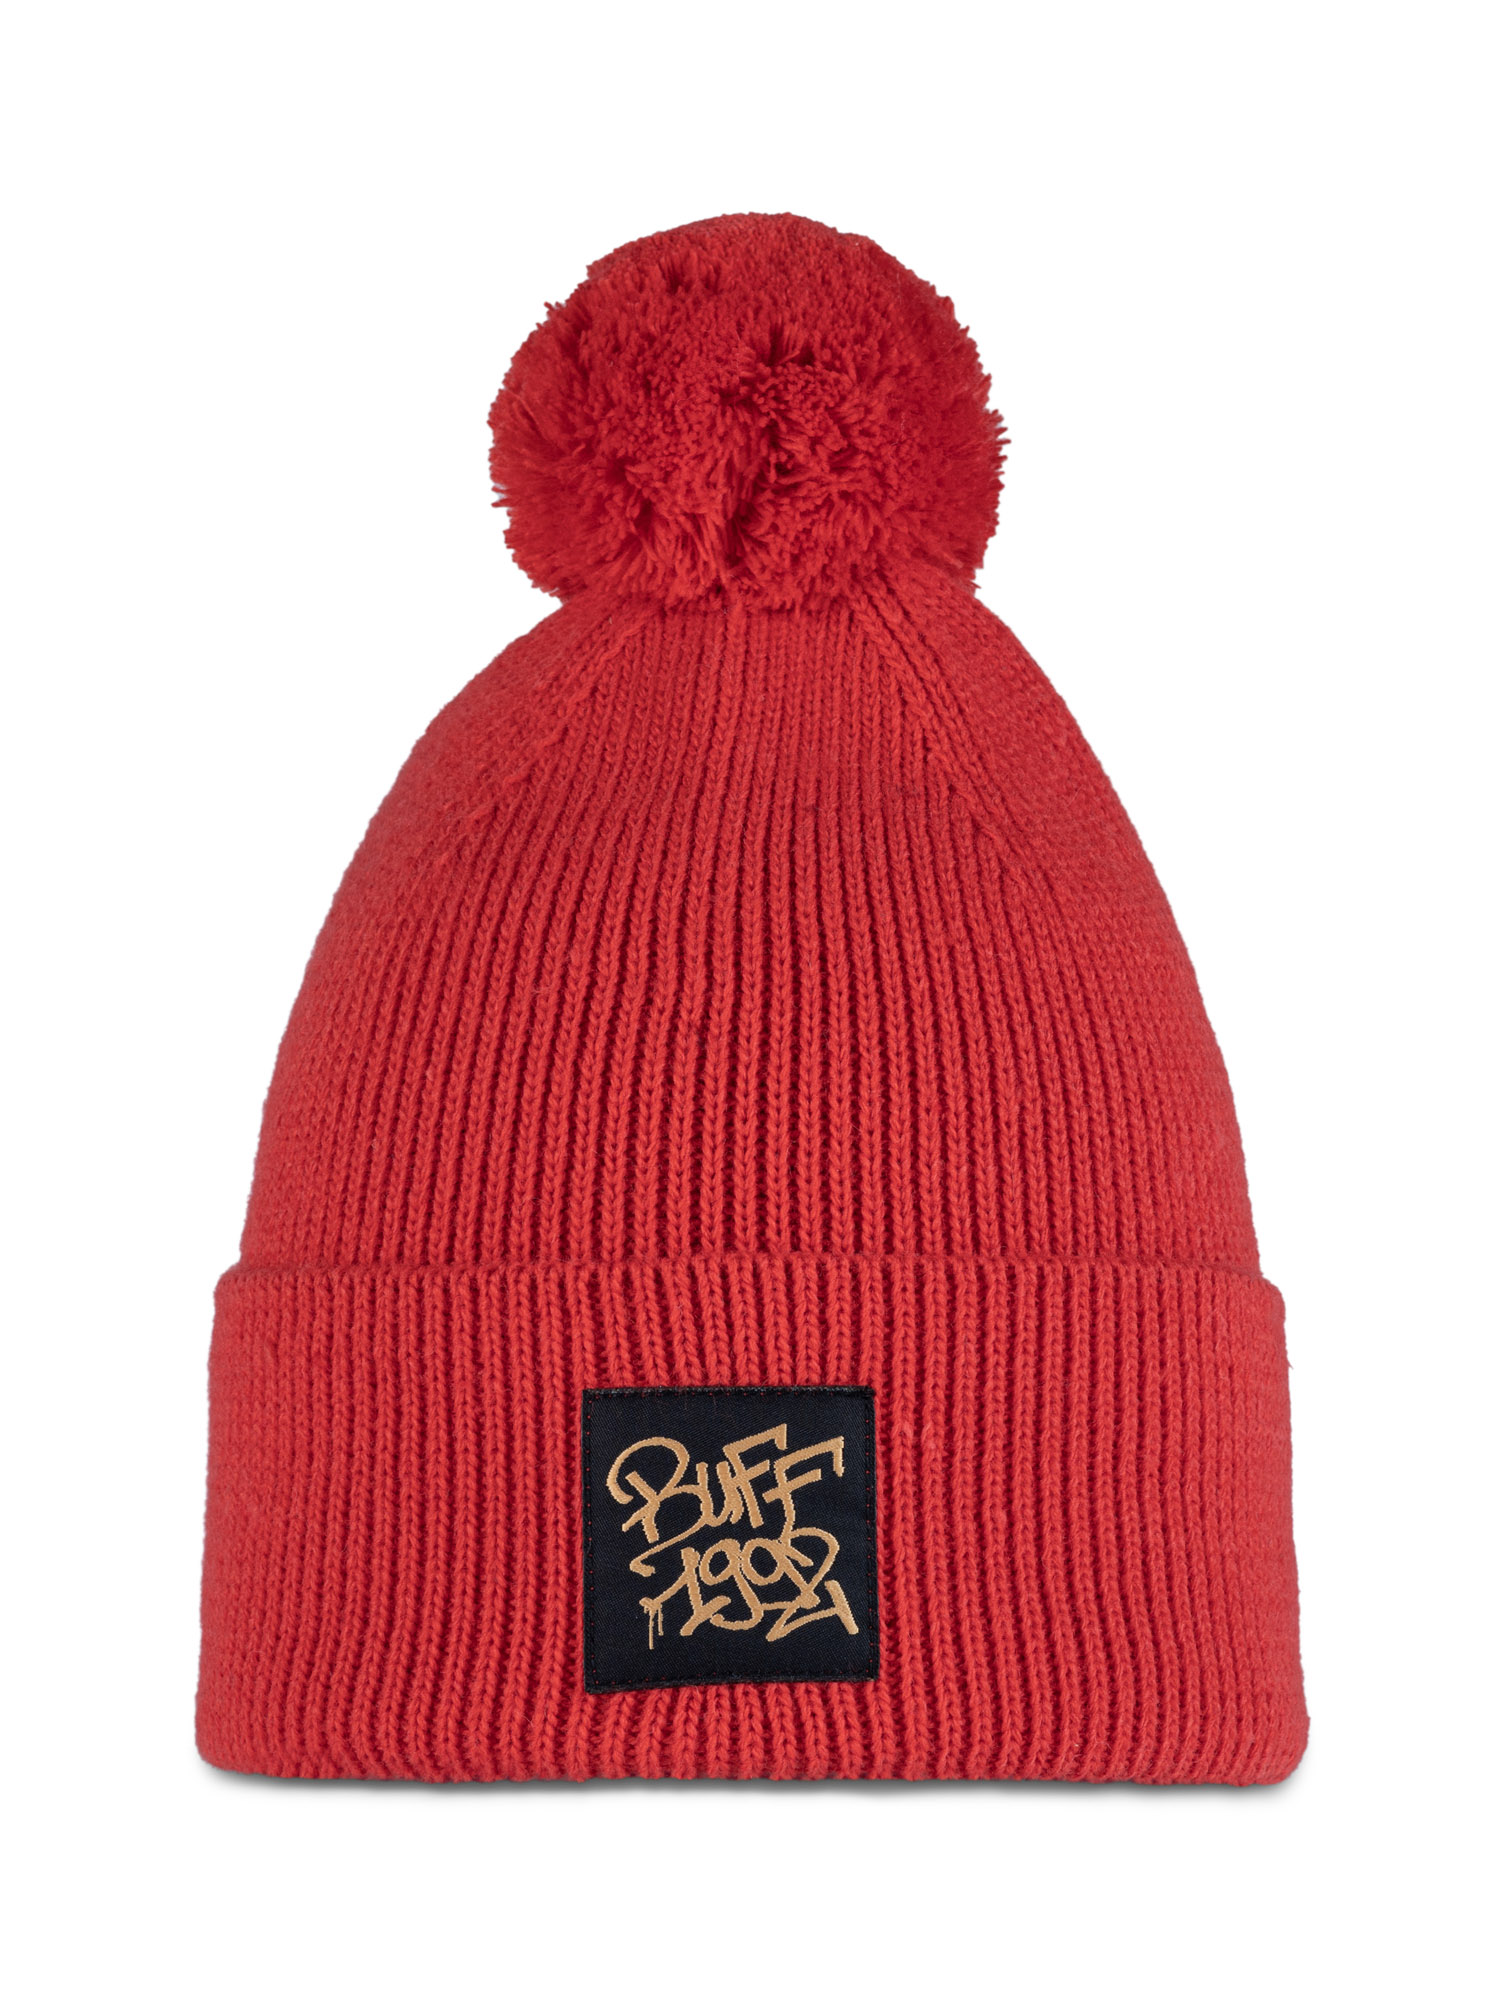 Шапка Buff Knitted Hat Deik 129628.402.10.00, красный